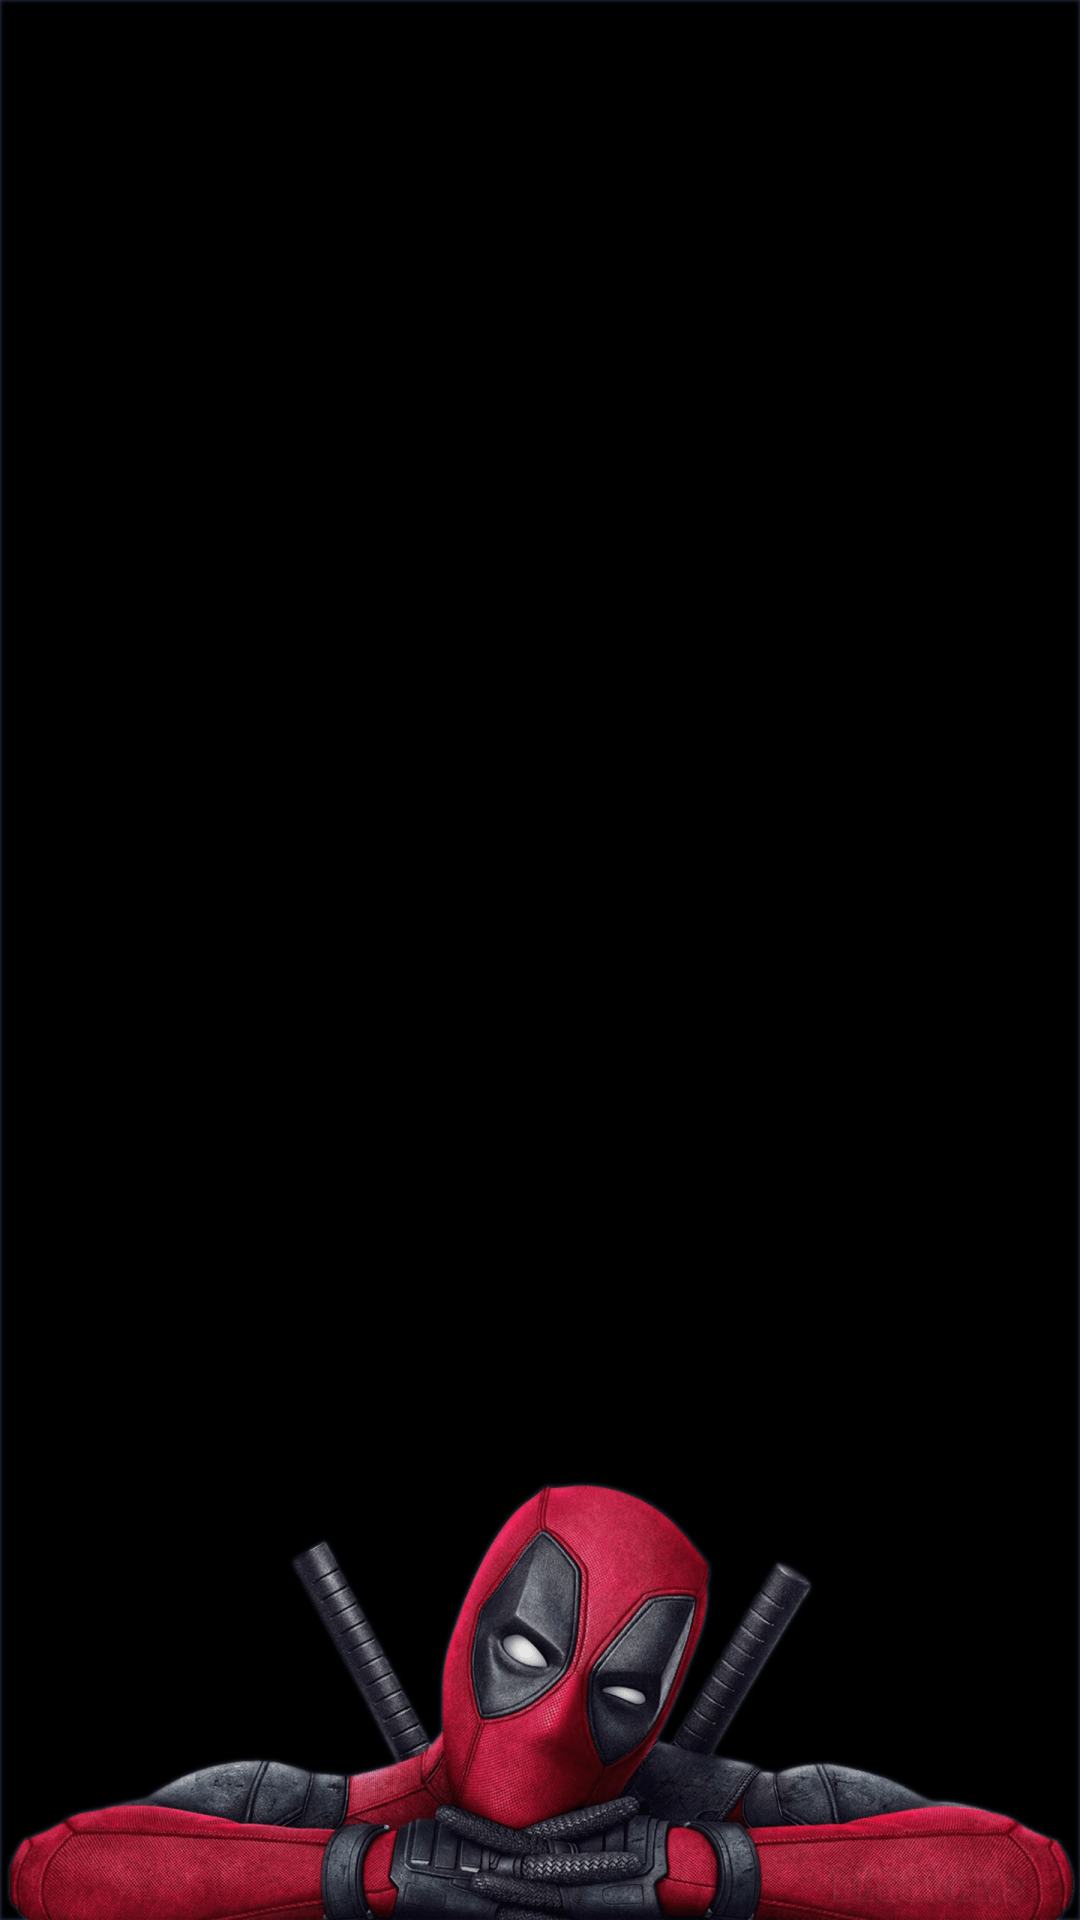 1080x1920 Hình nền Deadpool dành cho điện thoại OLED này siêu đẹp trên iPhone XS Max của tôi: iPhoneX